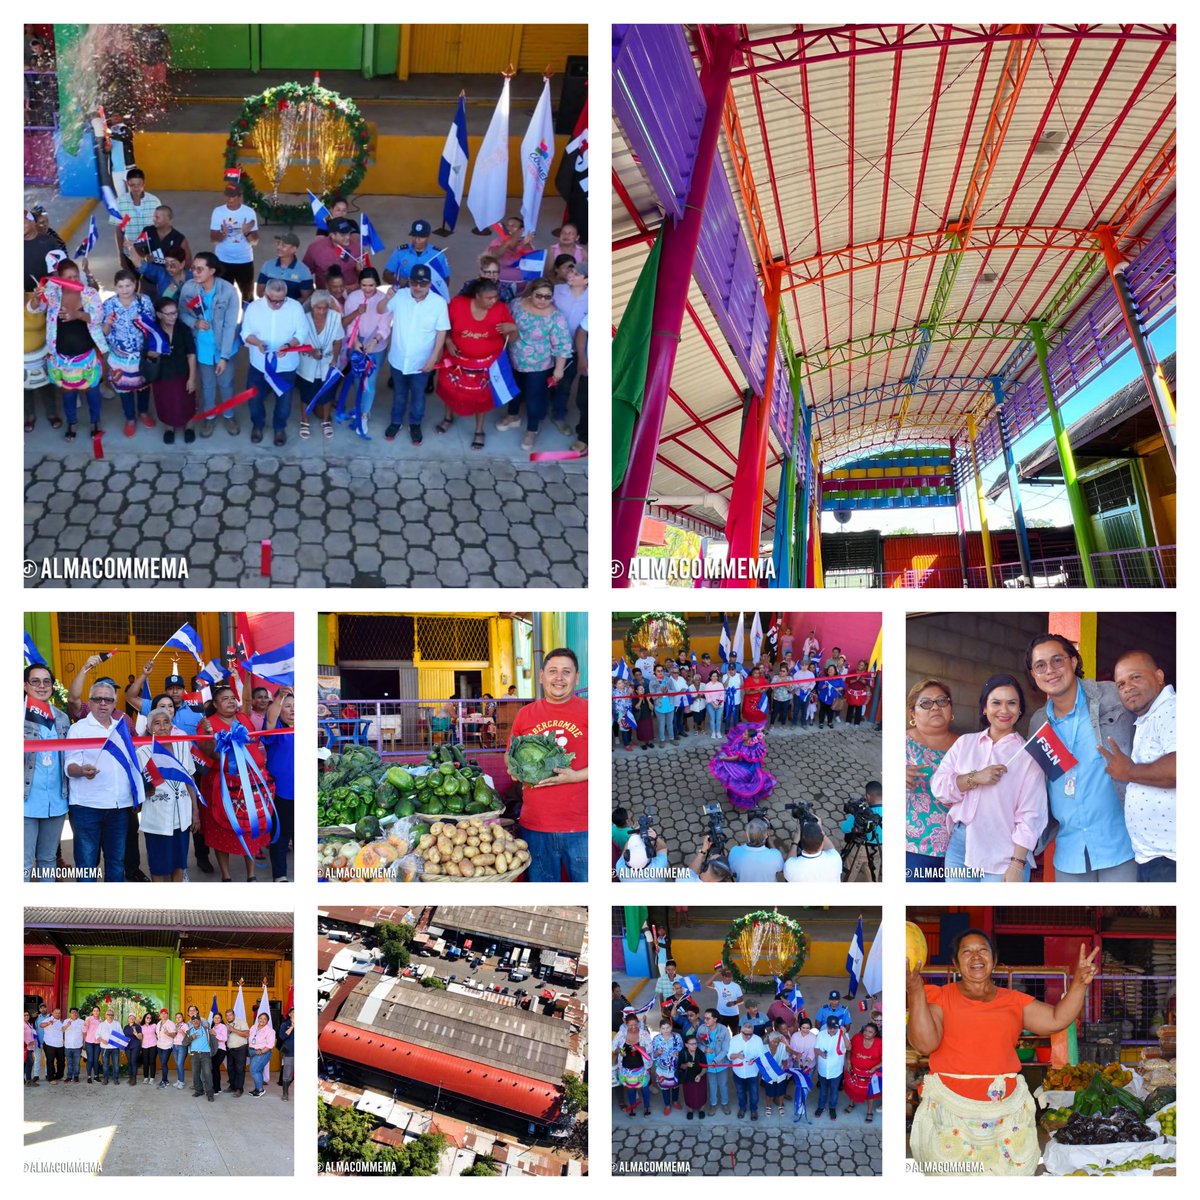 Nicaragua 🇳🇮 | Inauguración del nuevo Galerón 'Los Masayas' en el Mercado Mayoreo.

➡️ Para 40 comerciantes aproximadamente

#NicaraguaPazyBuenaVoluntad